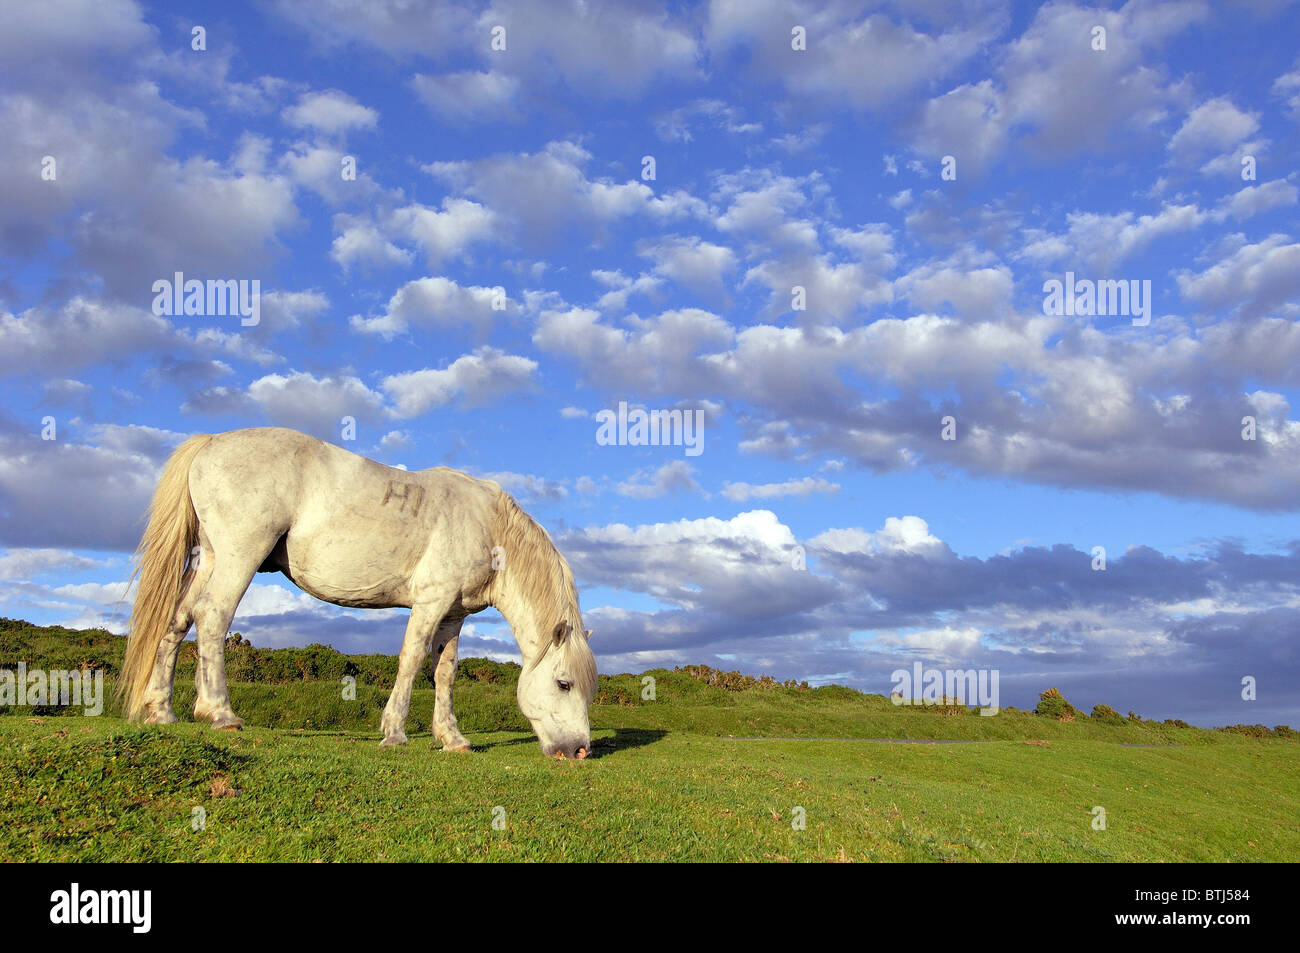 Single Dartmoor Pony and dramatic evening sky Stock Photo